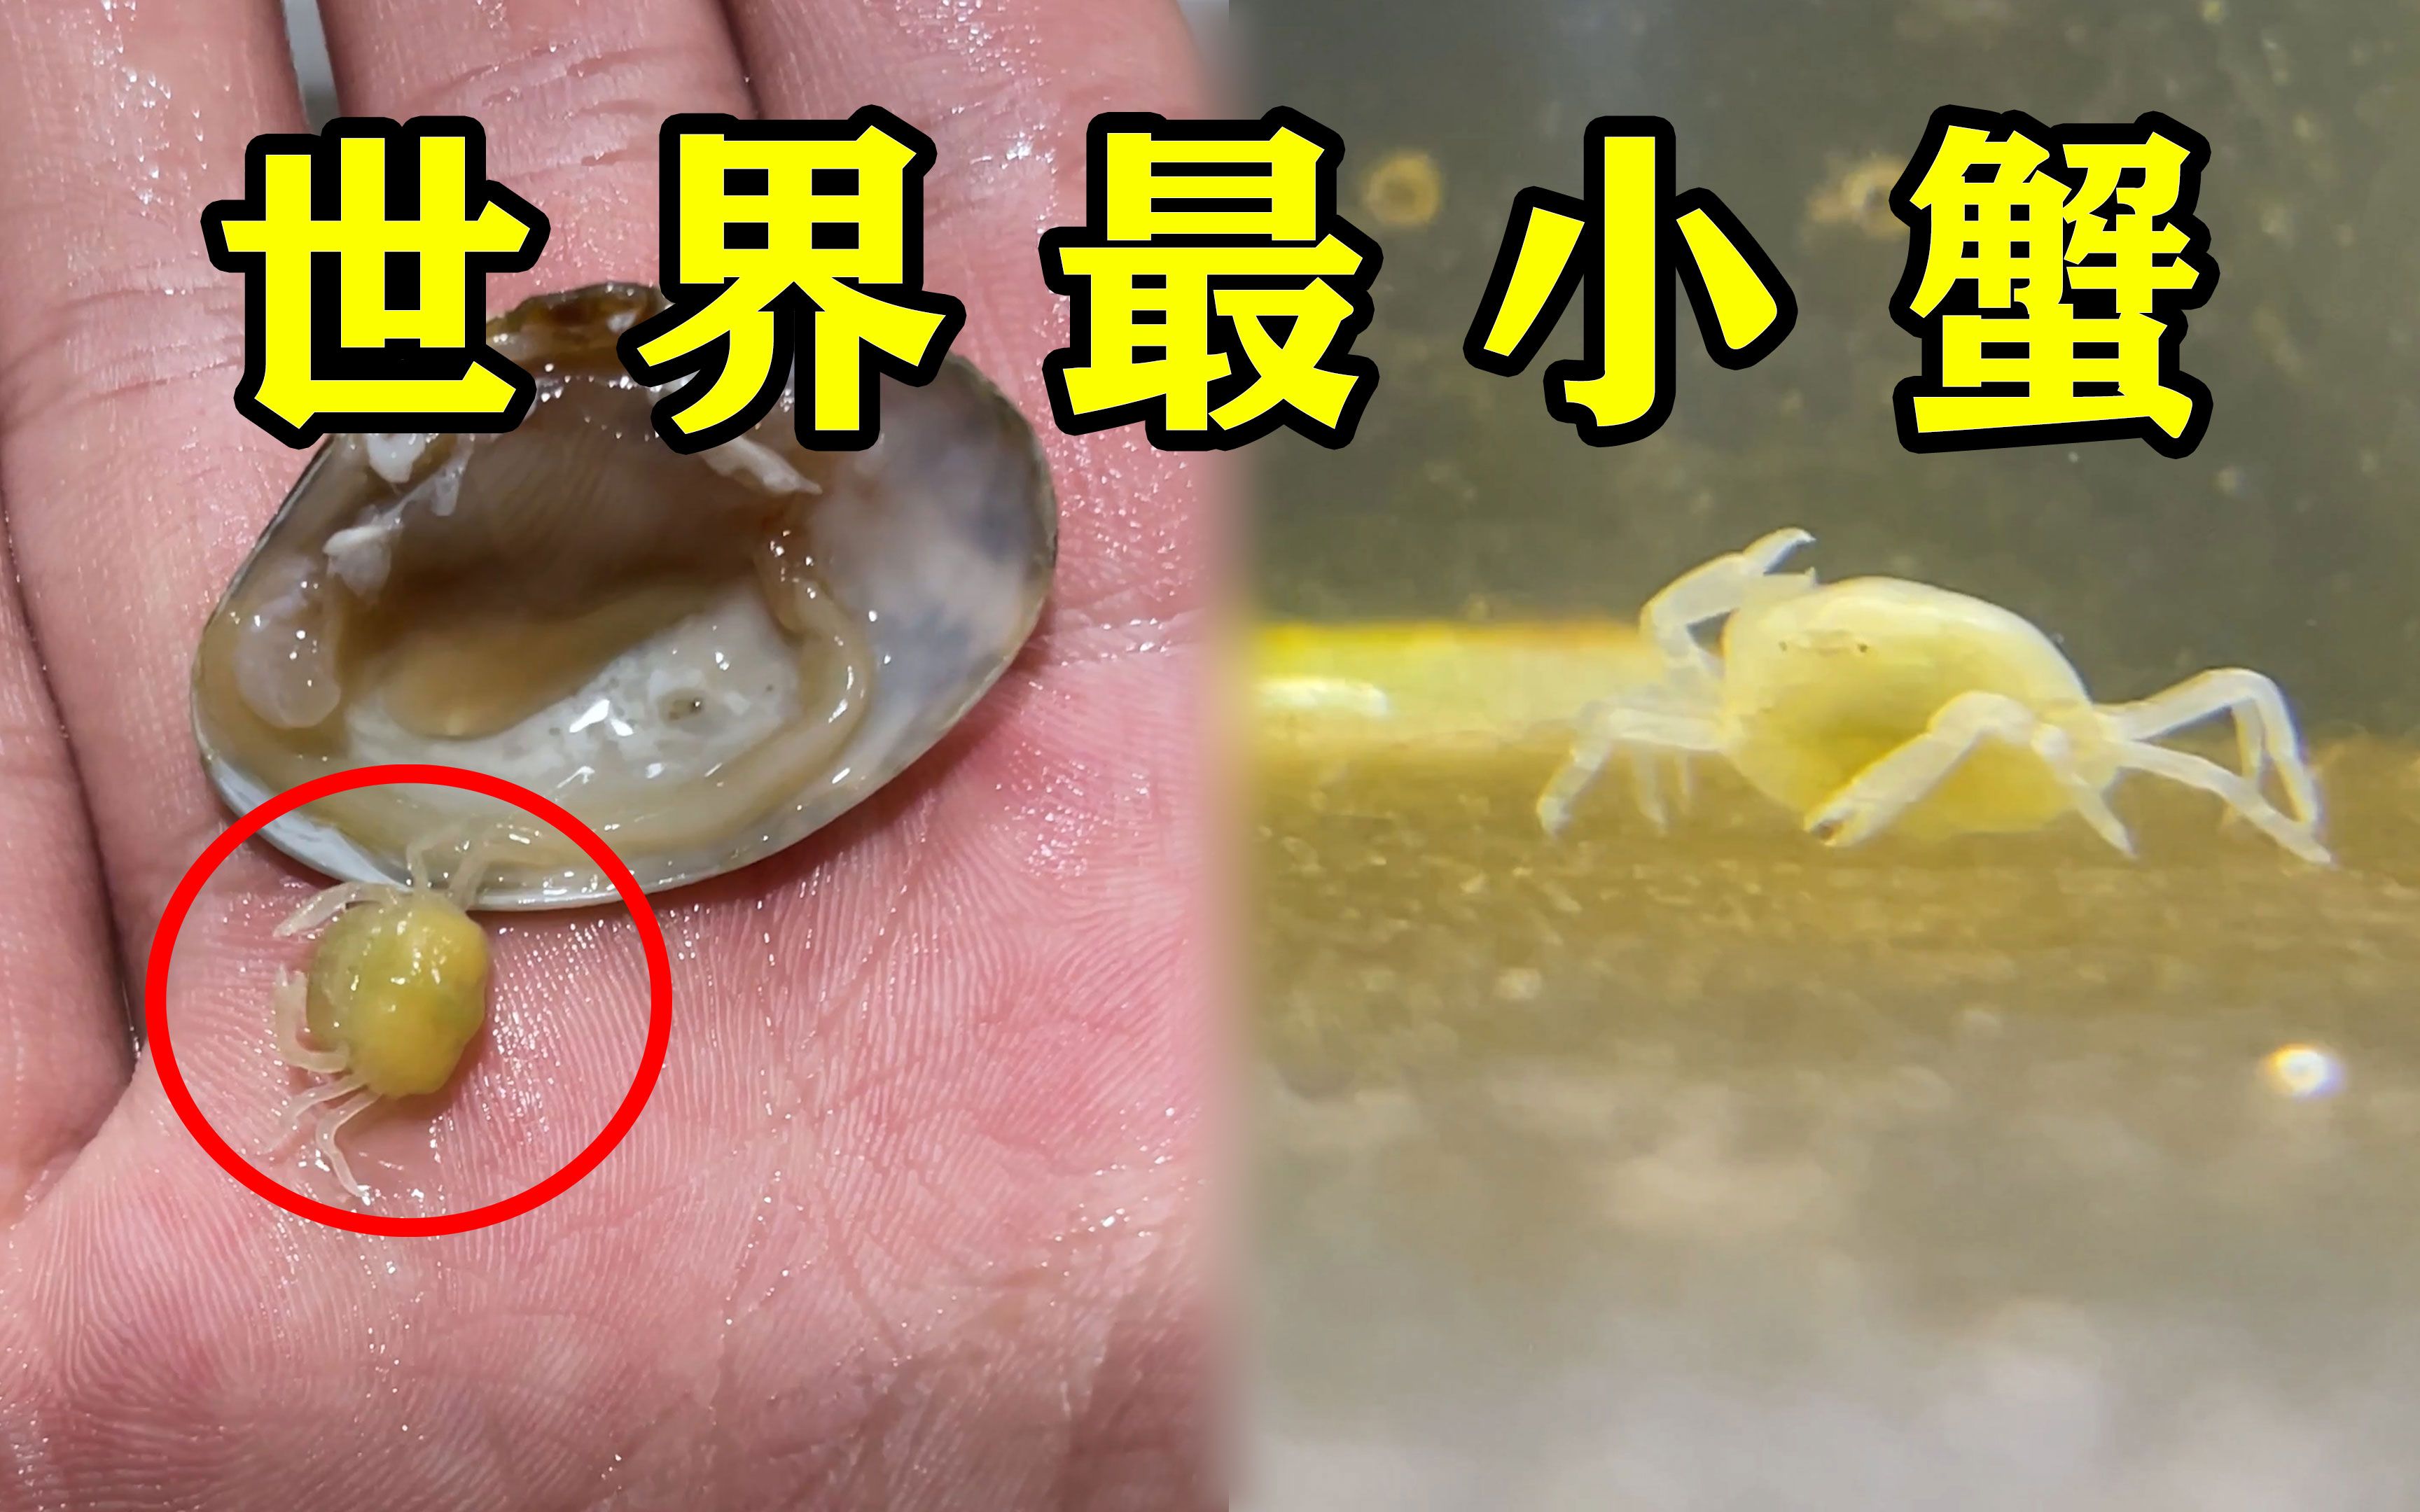 花蛤里开出一只世界上最小的螃蟹“豆蟹”竟然还是活的